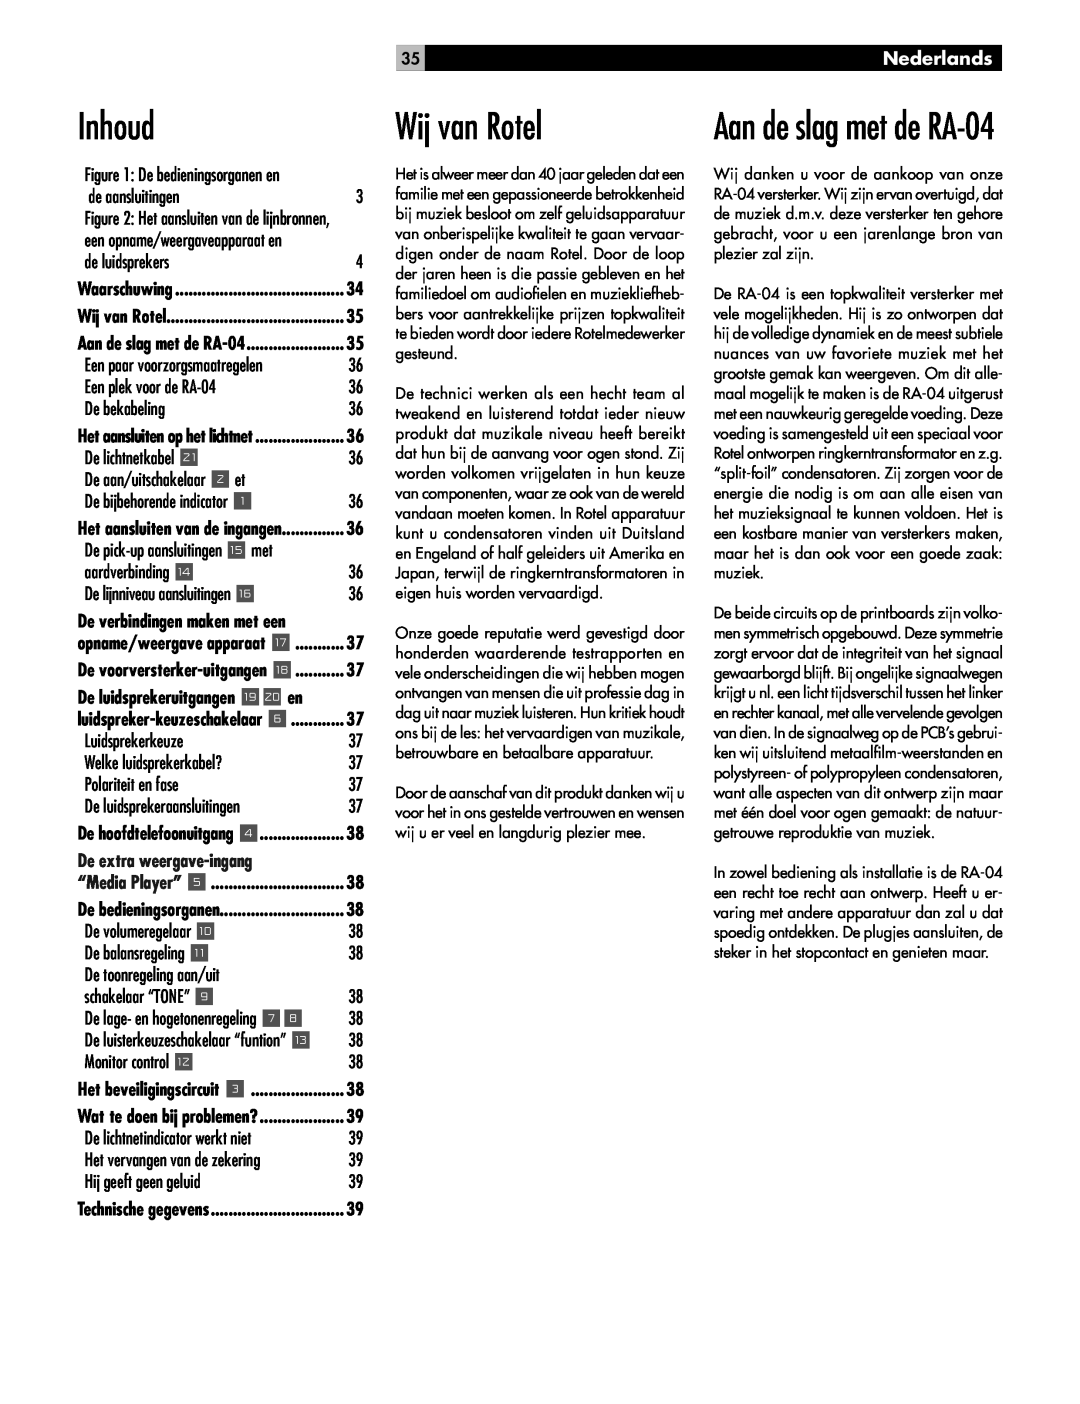 Rotel owner manual Inhoud, Wij van Rotel, Aan de slag met de RA-04, Nederlands 